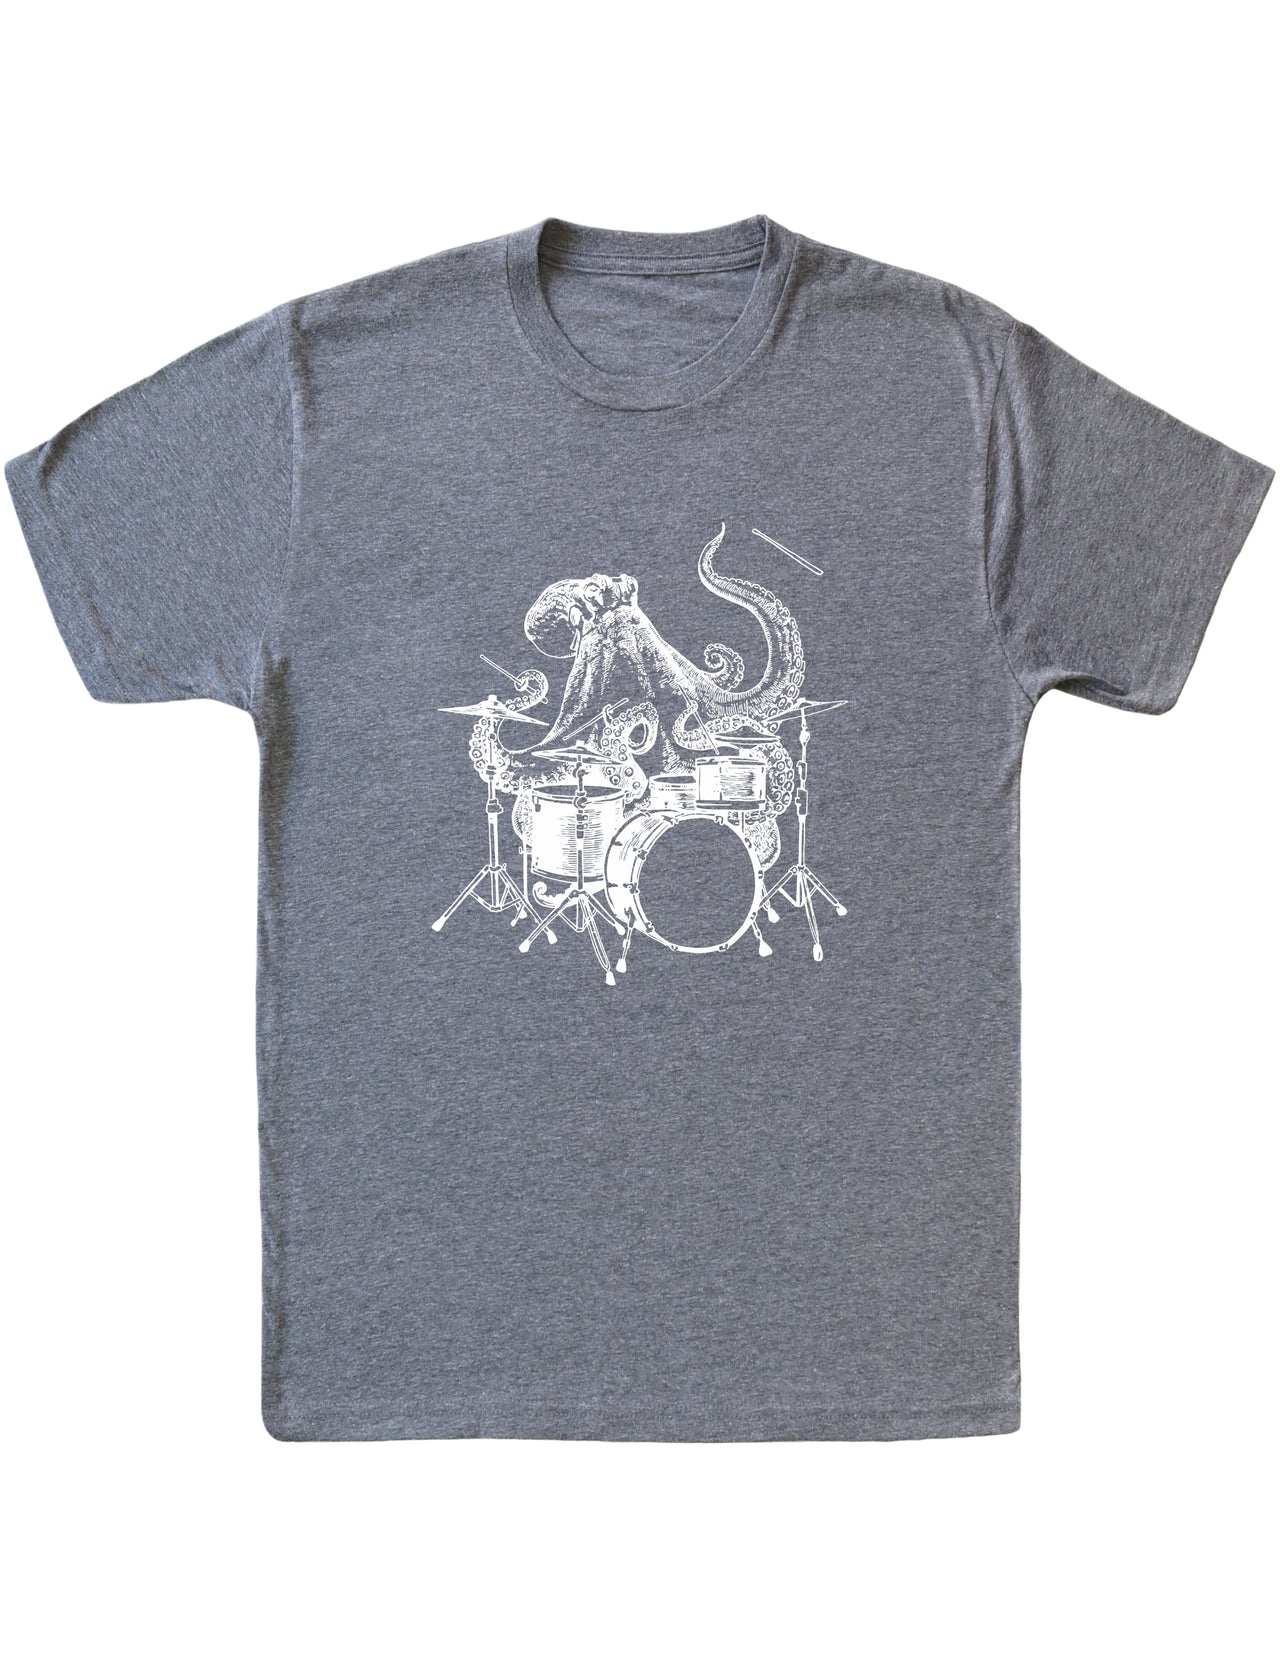 SEEMBO Octopus Playing Drums Funny Drummer Músico Banda de música Hombres Camiseta de tejido mixto